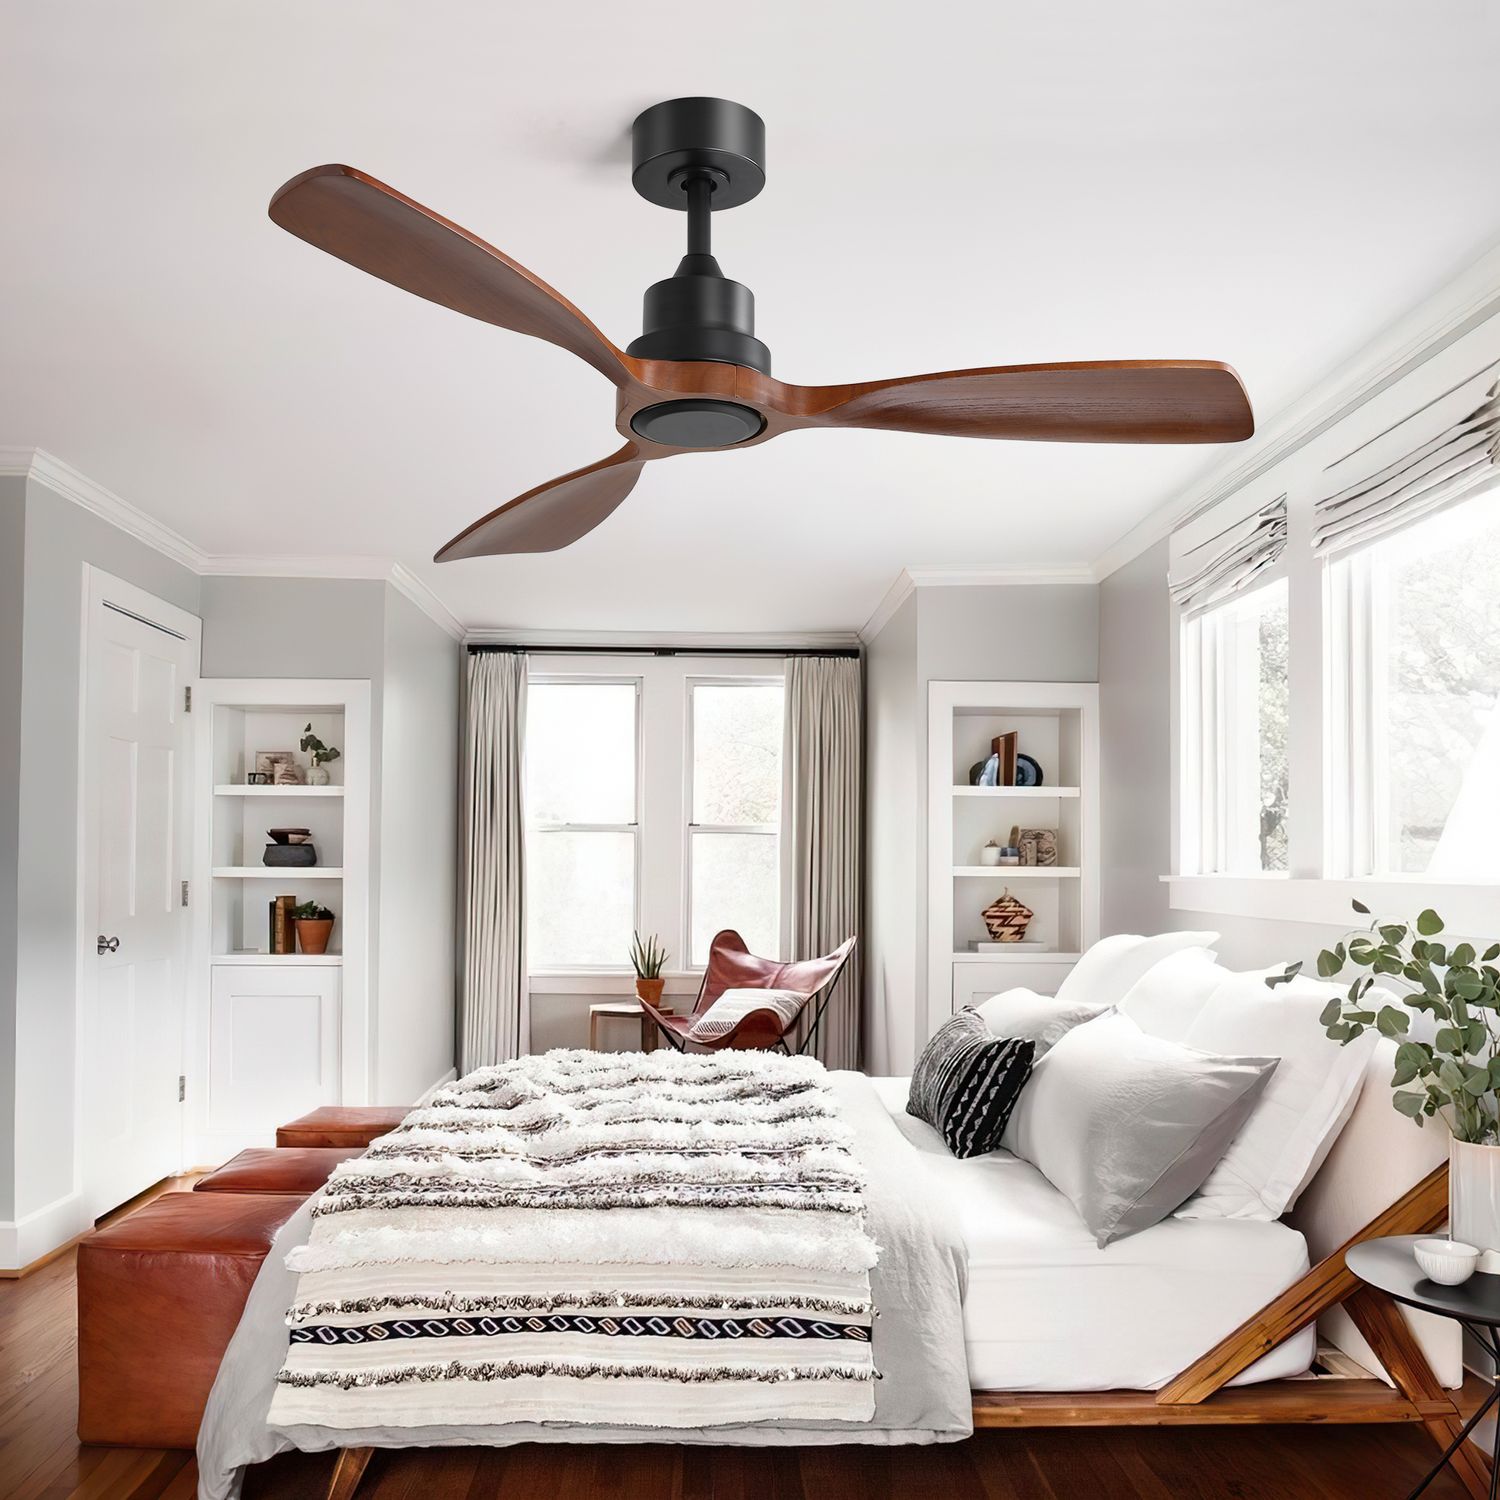 Black and Walnut Wood Flush Mount Ceiling Fan in a bedroom